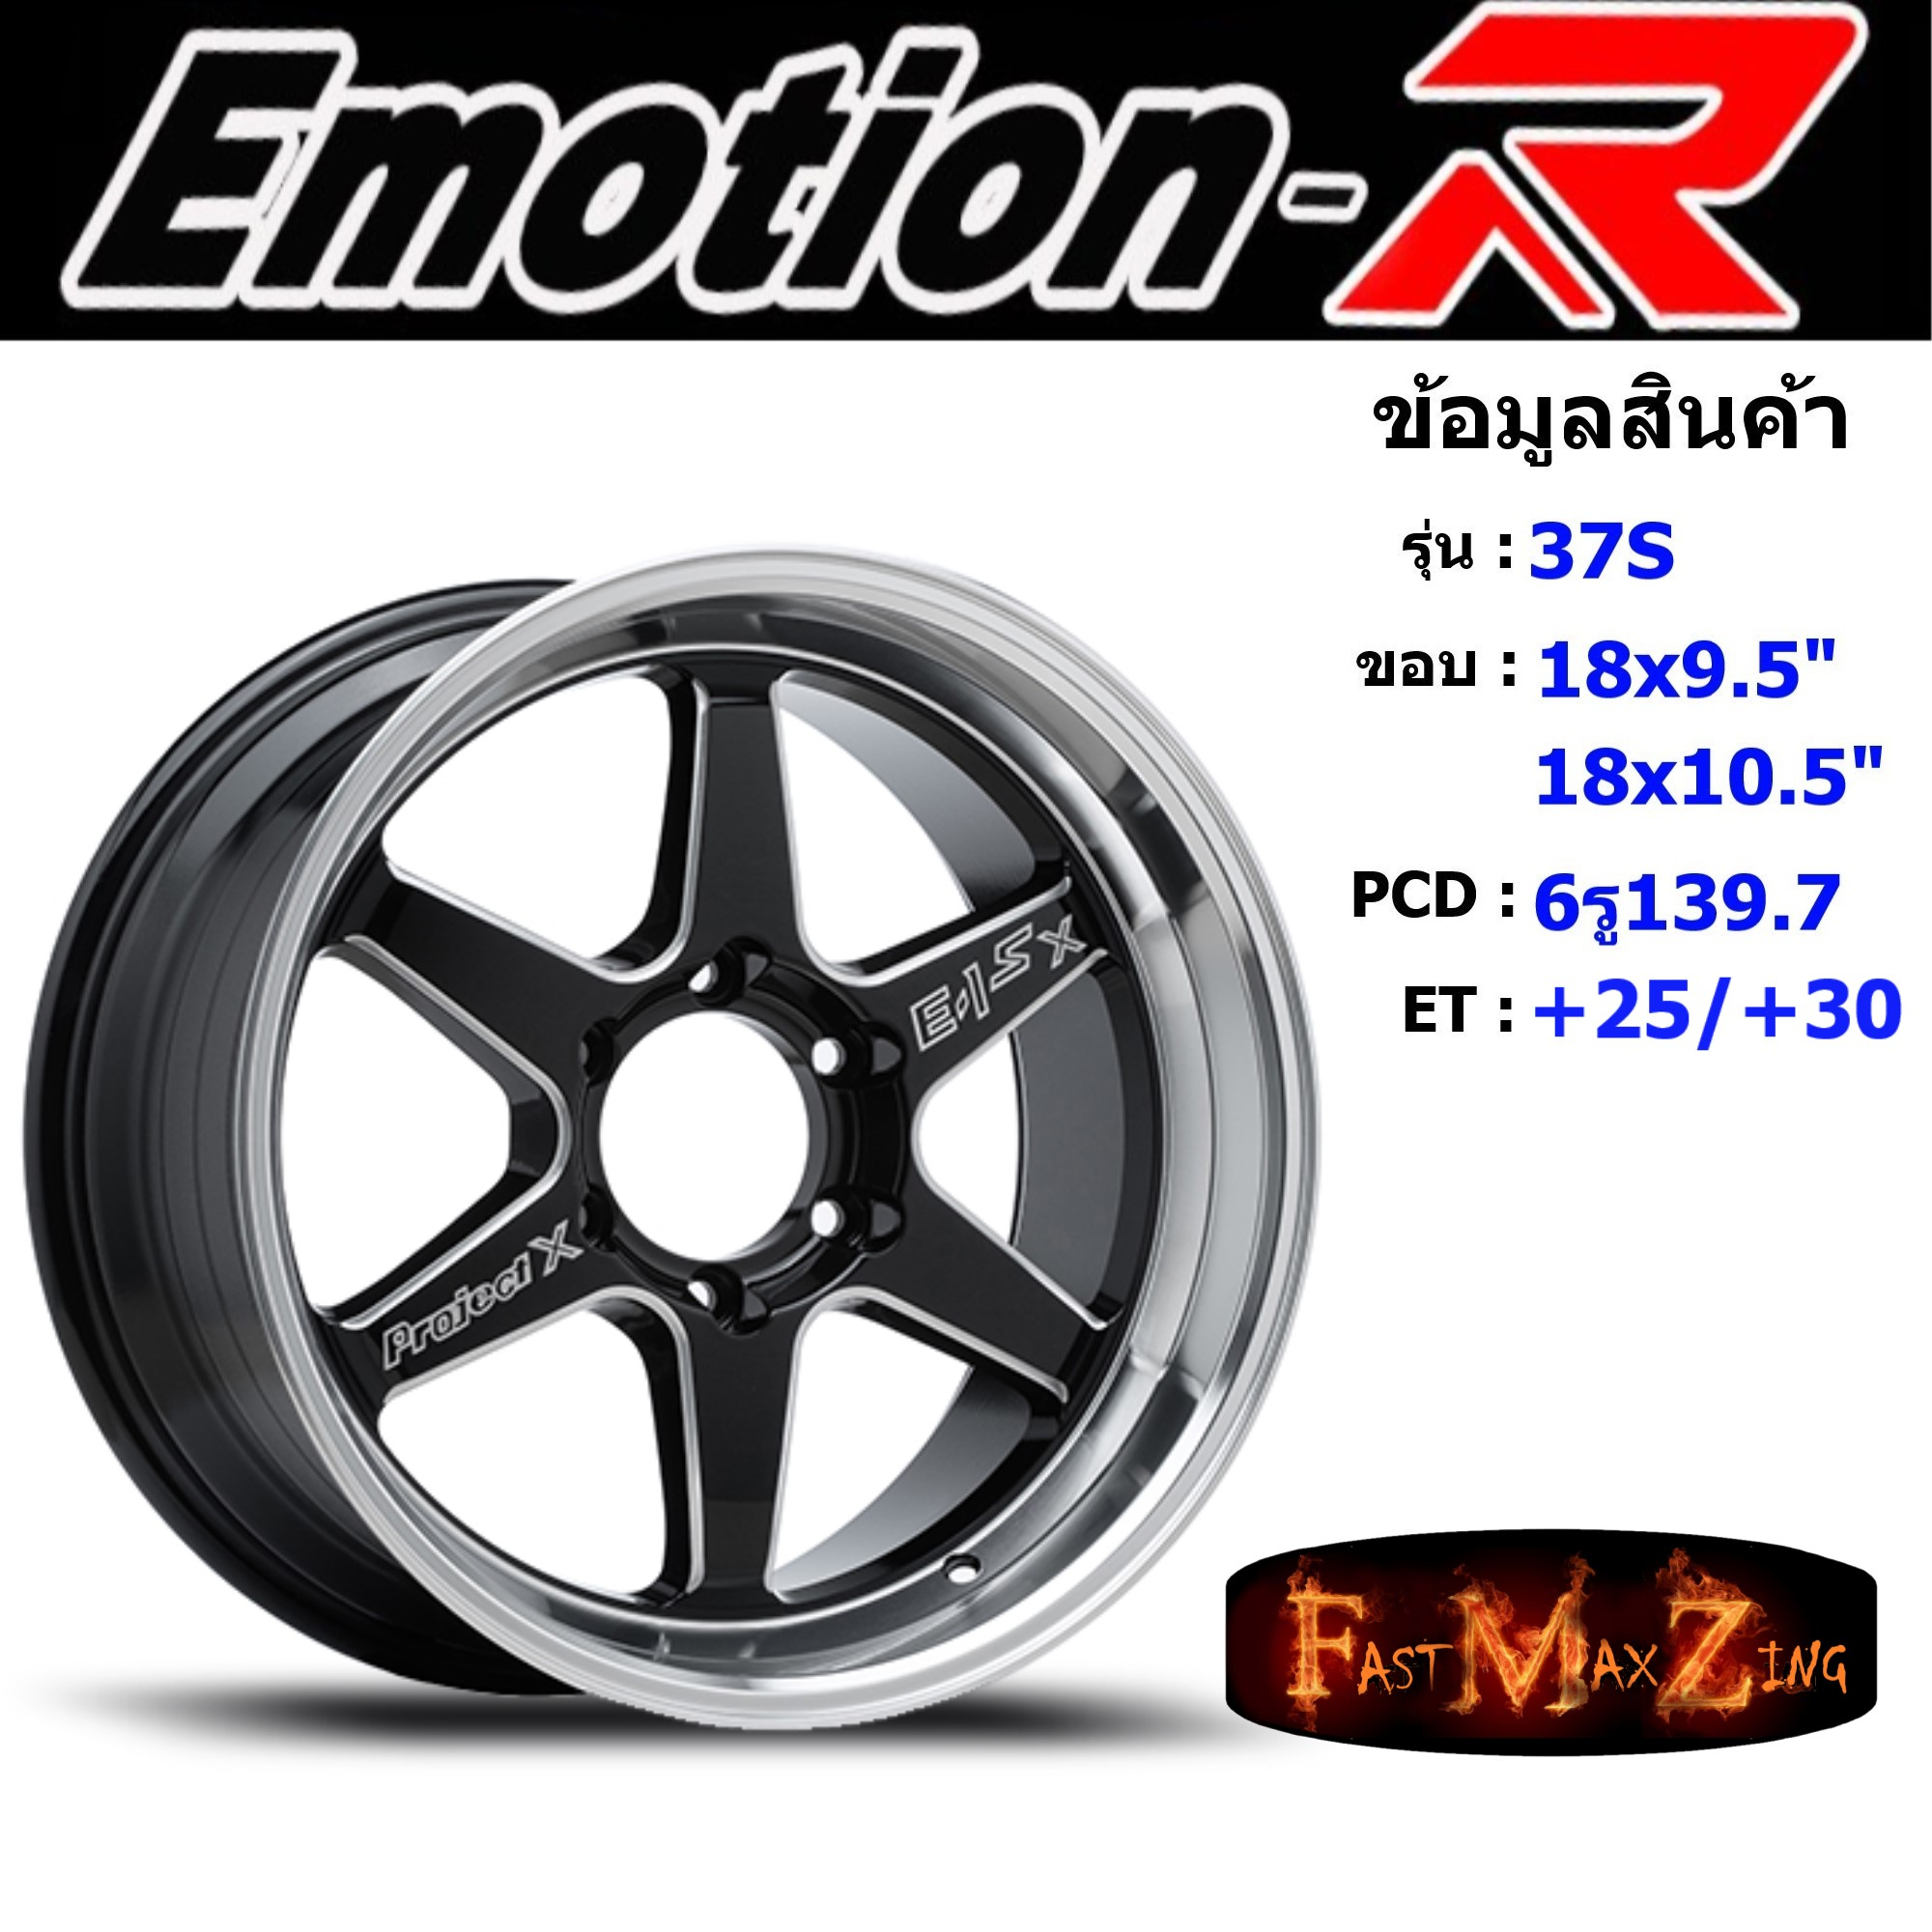 EmotionR Wheel E1X ขอบ 18x9.5"/10.5" 6รู139.7 ET+25/+30 สีBKSL ล้อแม็ก อีโมชั่นอาร์ emotionr18 แม็กรถยนต์ขอบ18 แม็กขอบ18